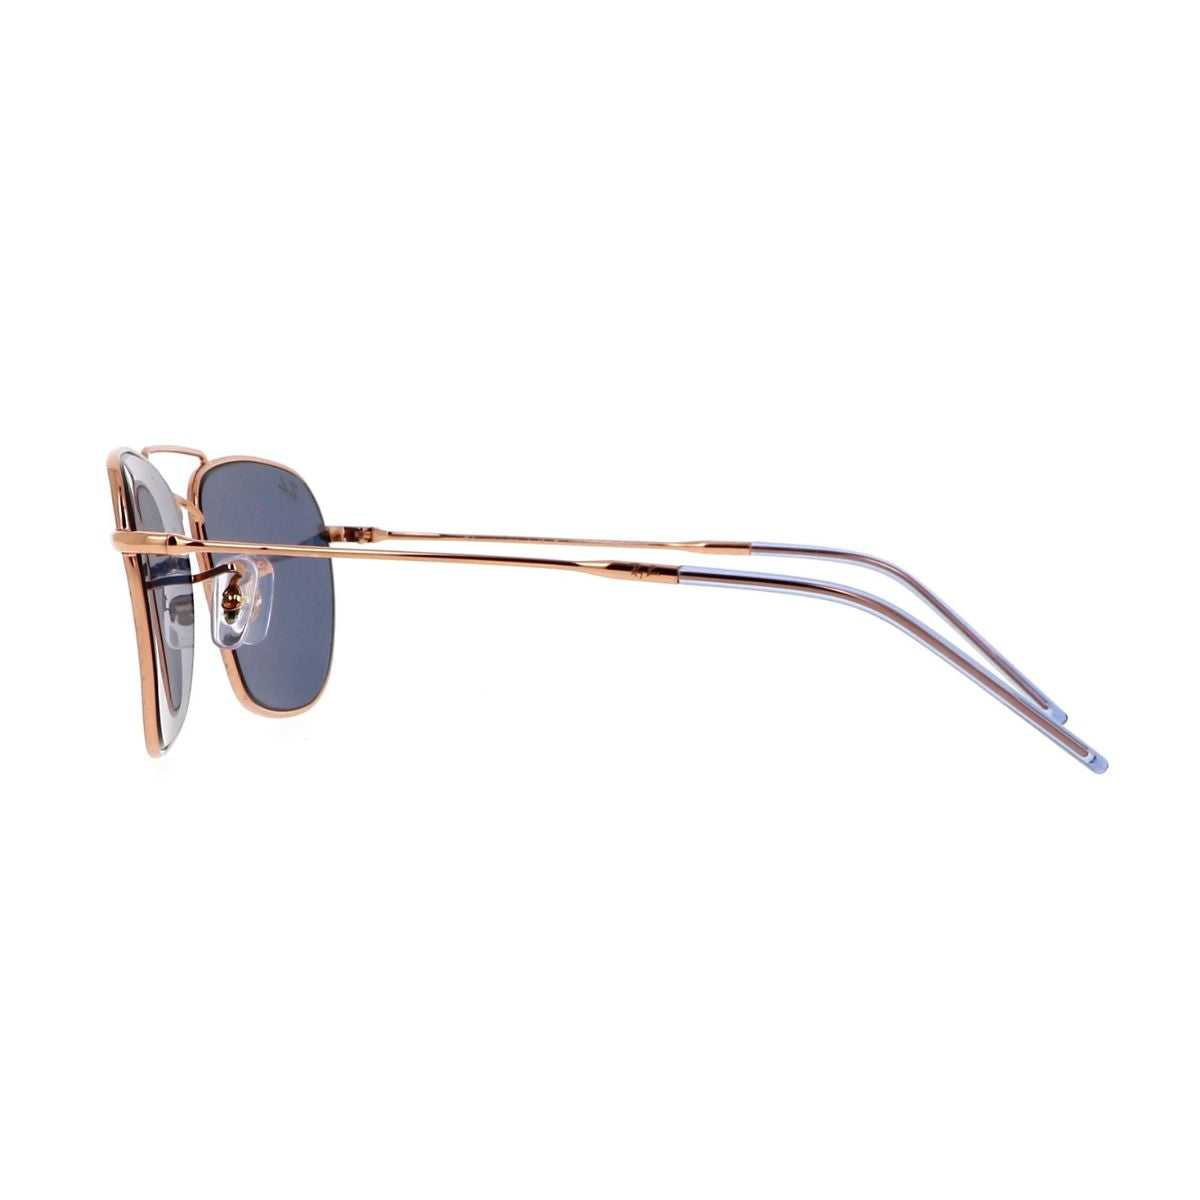 "Best Rayban 0102 9202/3a Reverce Aviator UV Sunglasses At Optorium"